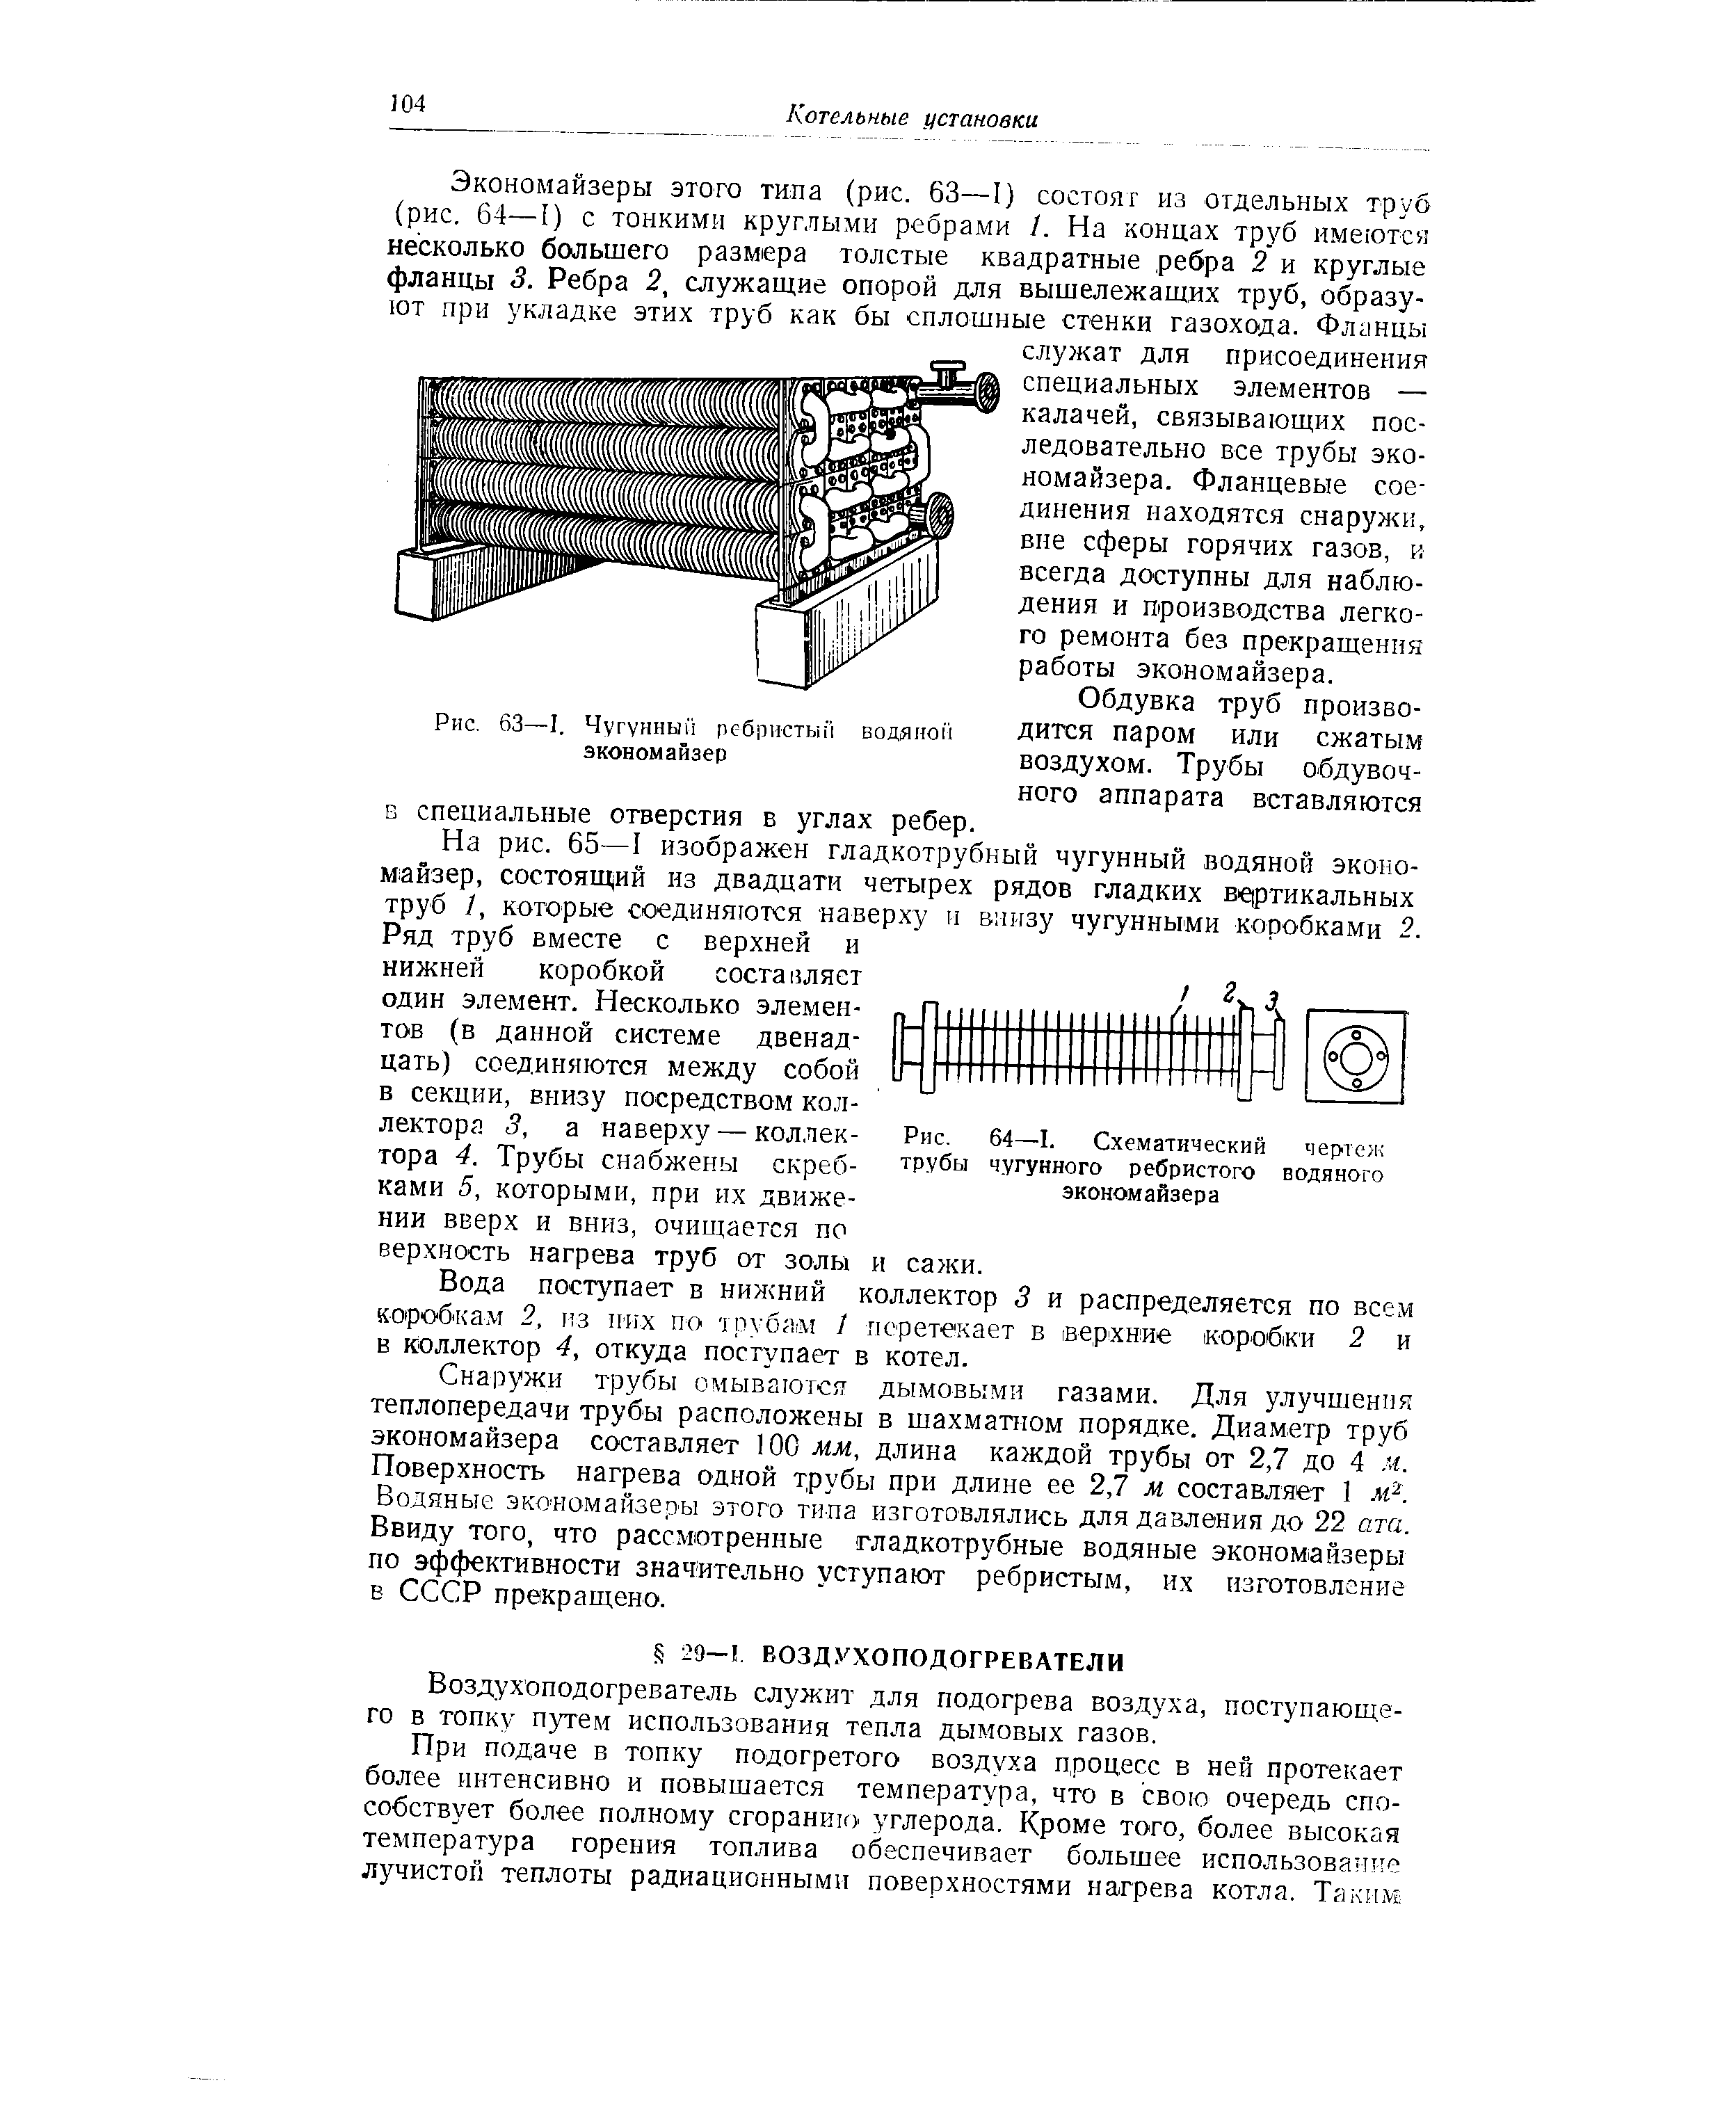 Рис. 64—I. Схематический чертеж трубы чугунного ребристого водяного экономайзера
